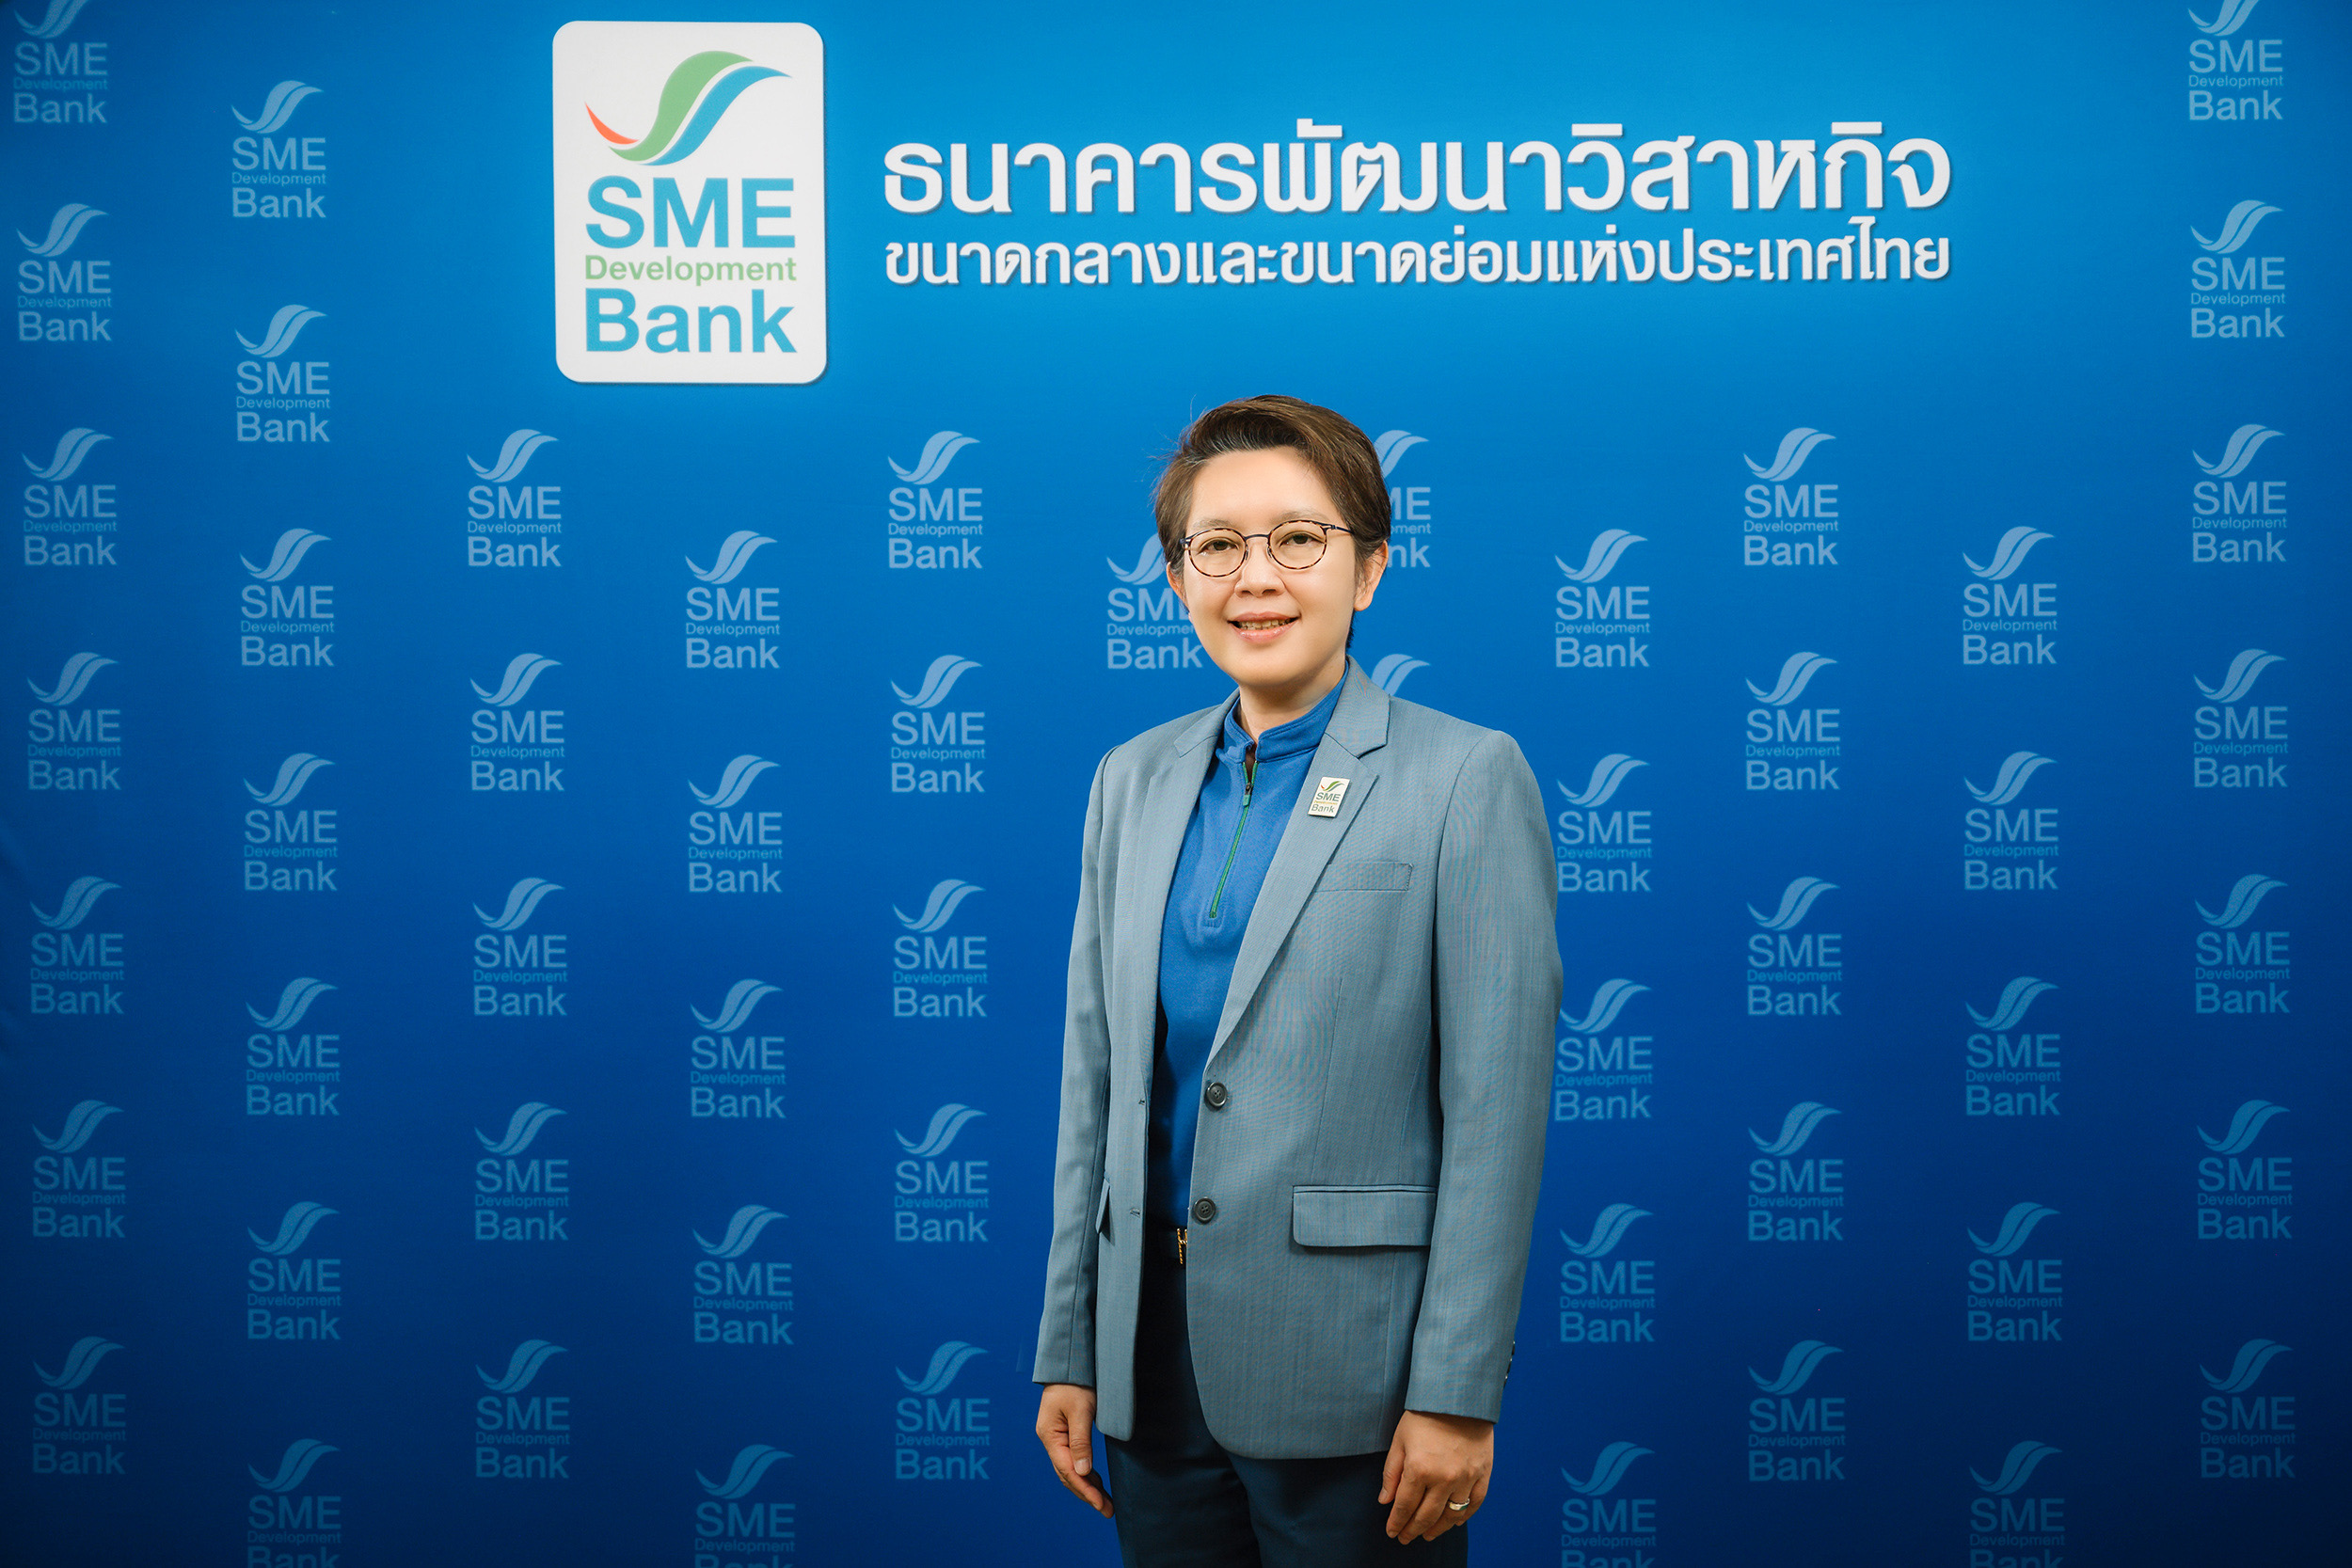 SME D Bank เจ้าภาพร่วมจัดใหญ่ส่งท้าย ‘มหกรรมร่วมใจแก้หนี้’ หาดใหญ่ 27-29 ม.ค.นี้